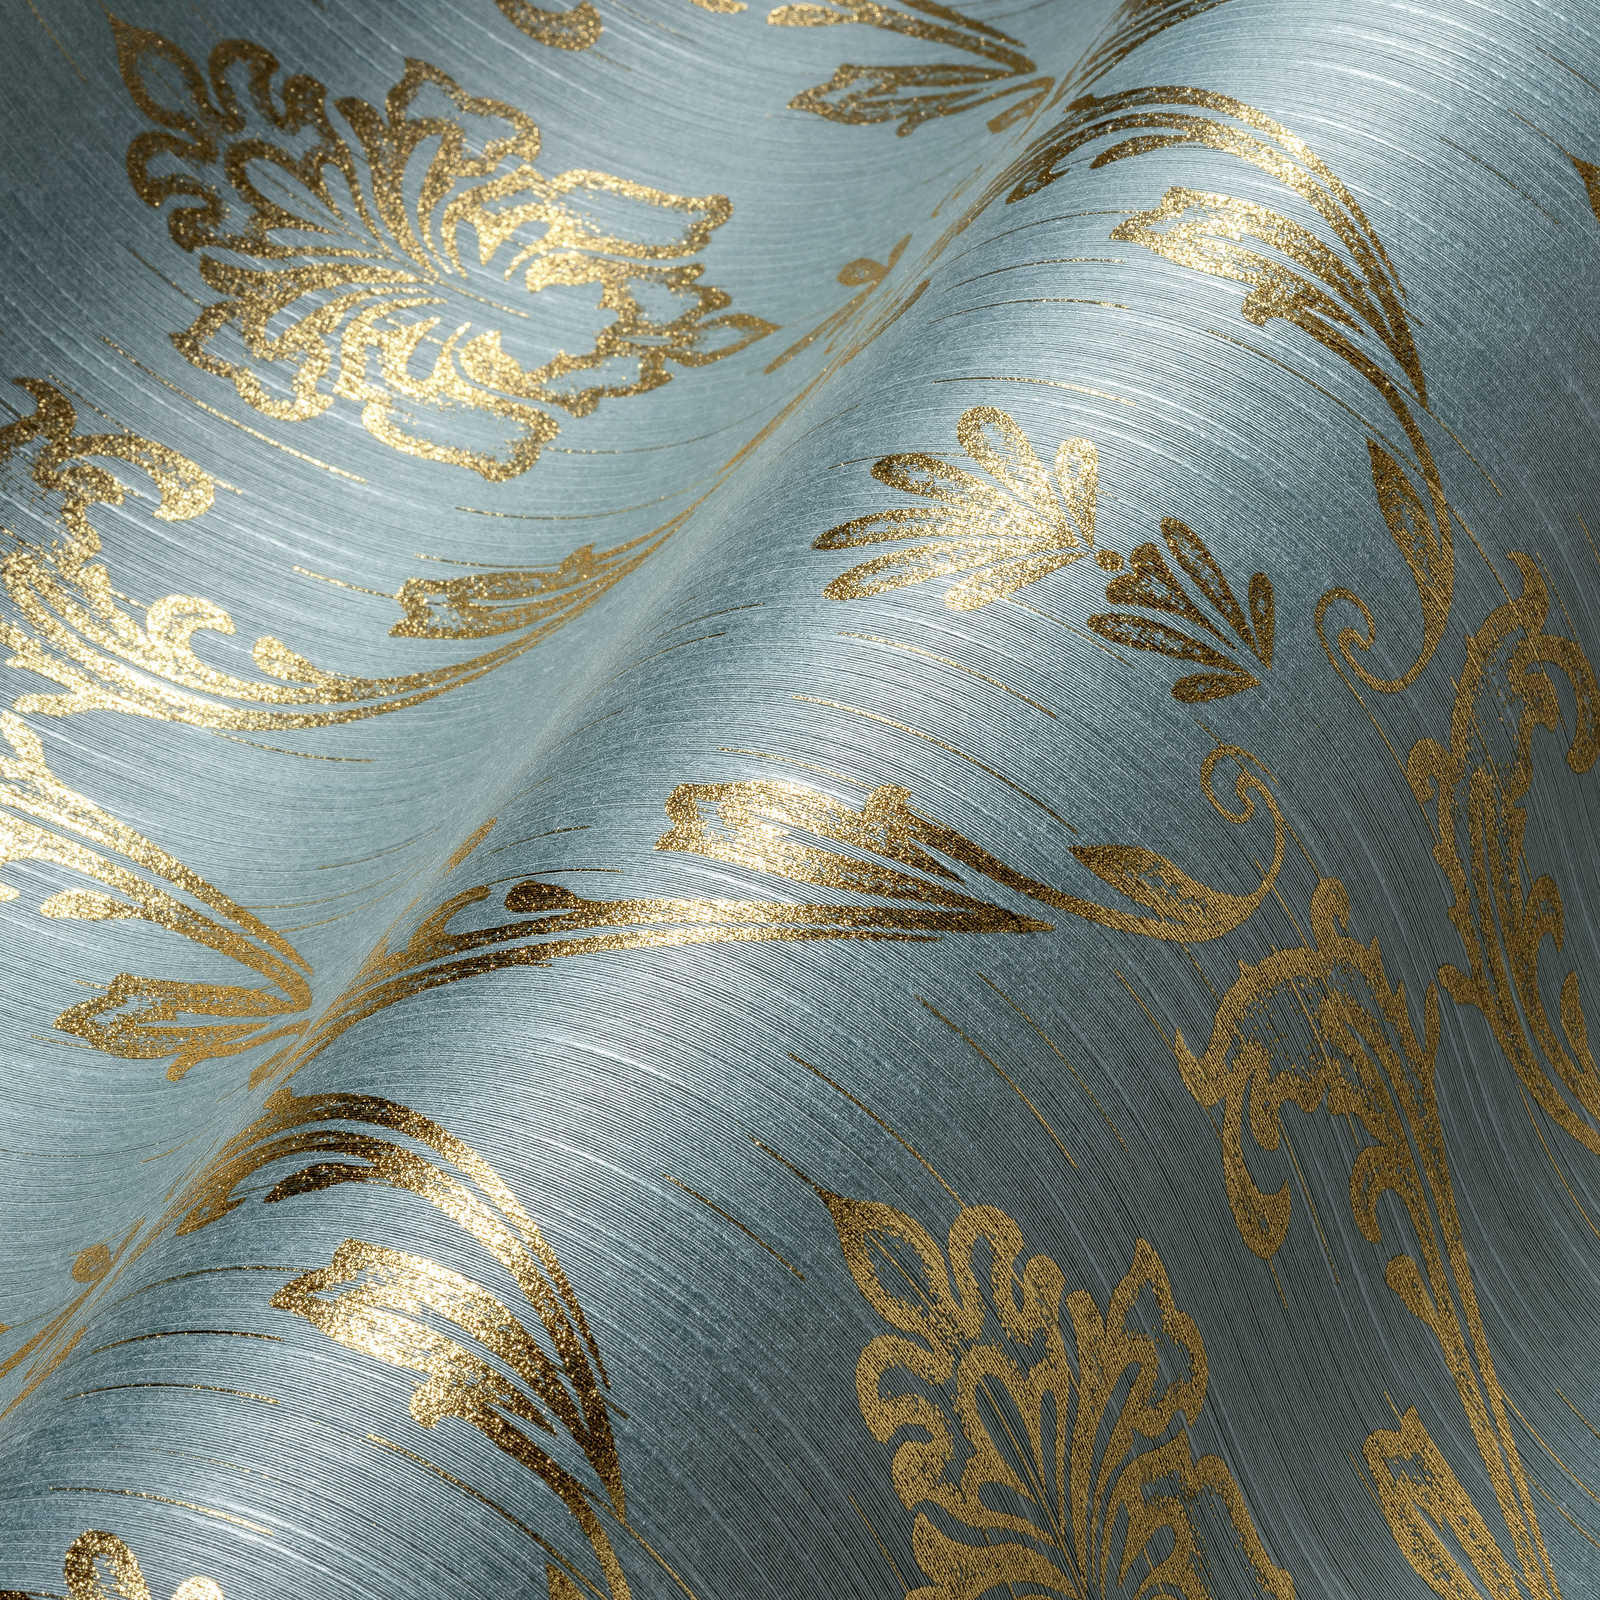             Ornamenttapete mit floralen Elementen in Gold – Gold, Blau, Grün
        